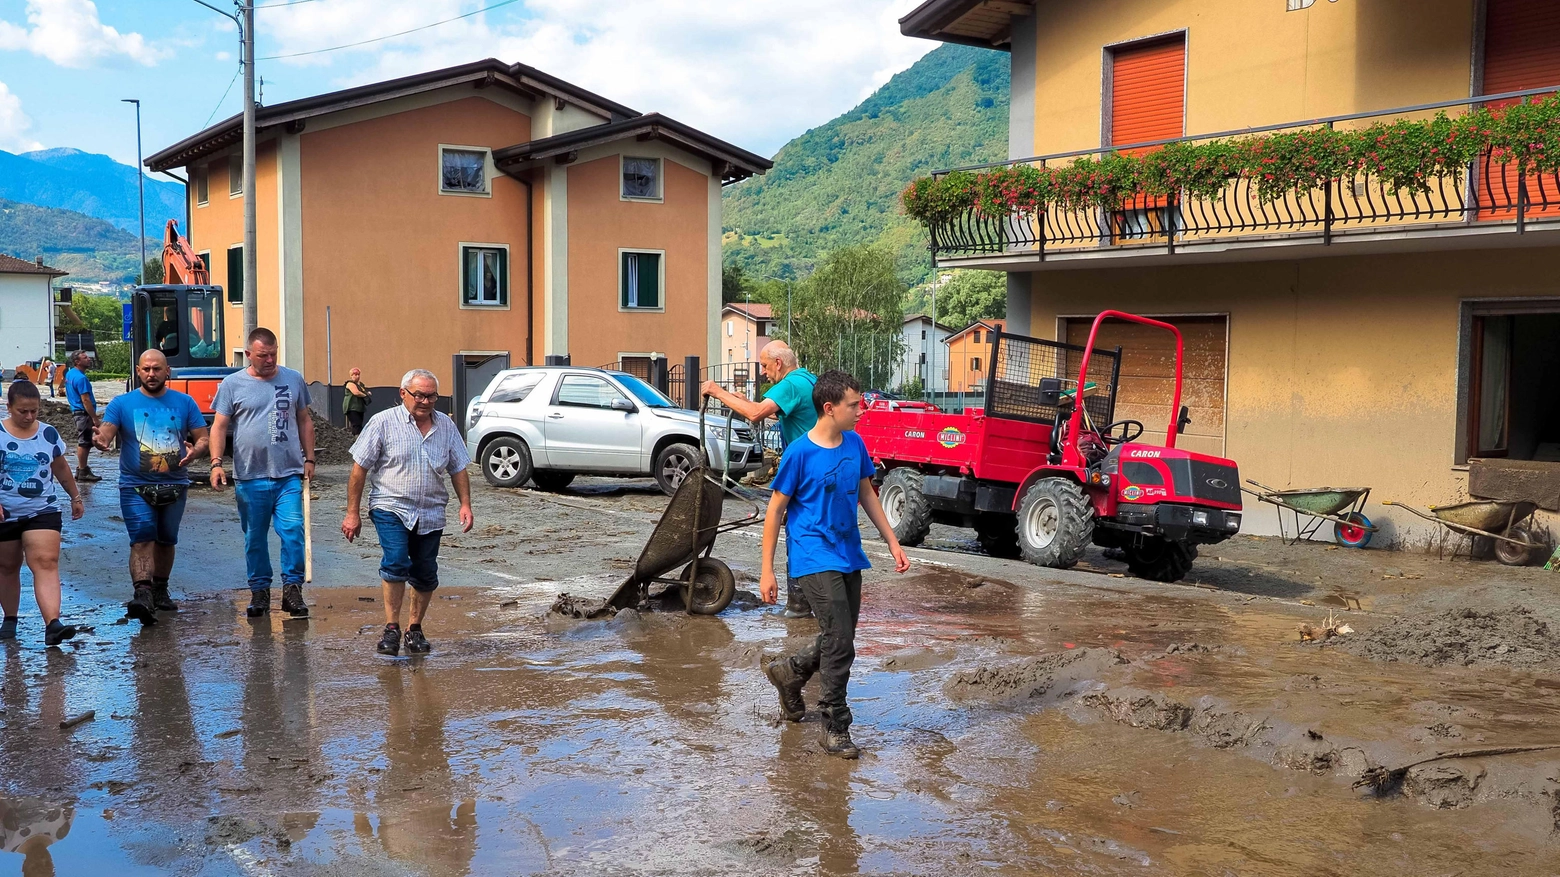 Bomba d'acqua in Val Camonica